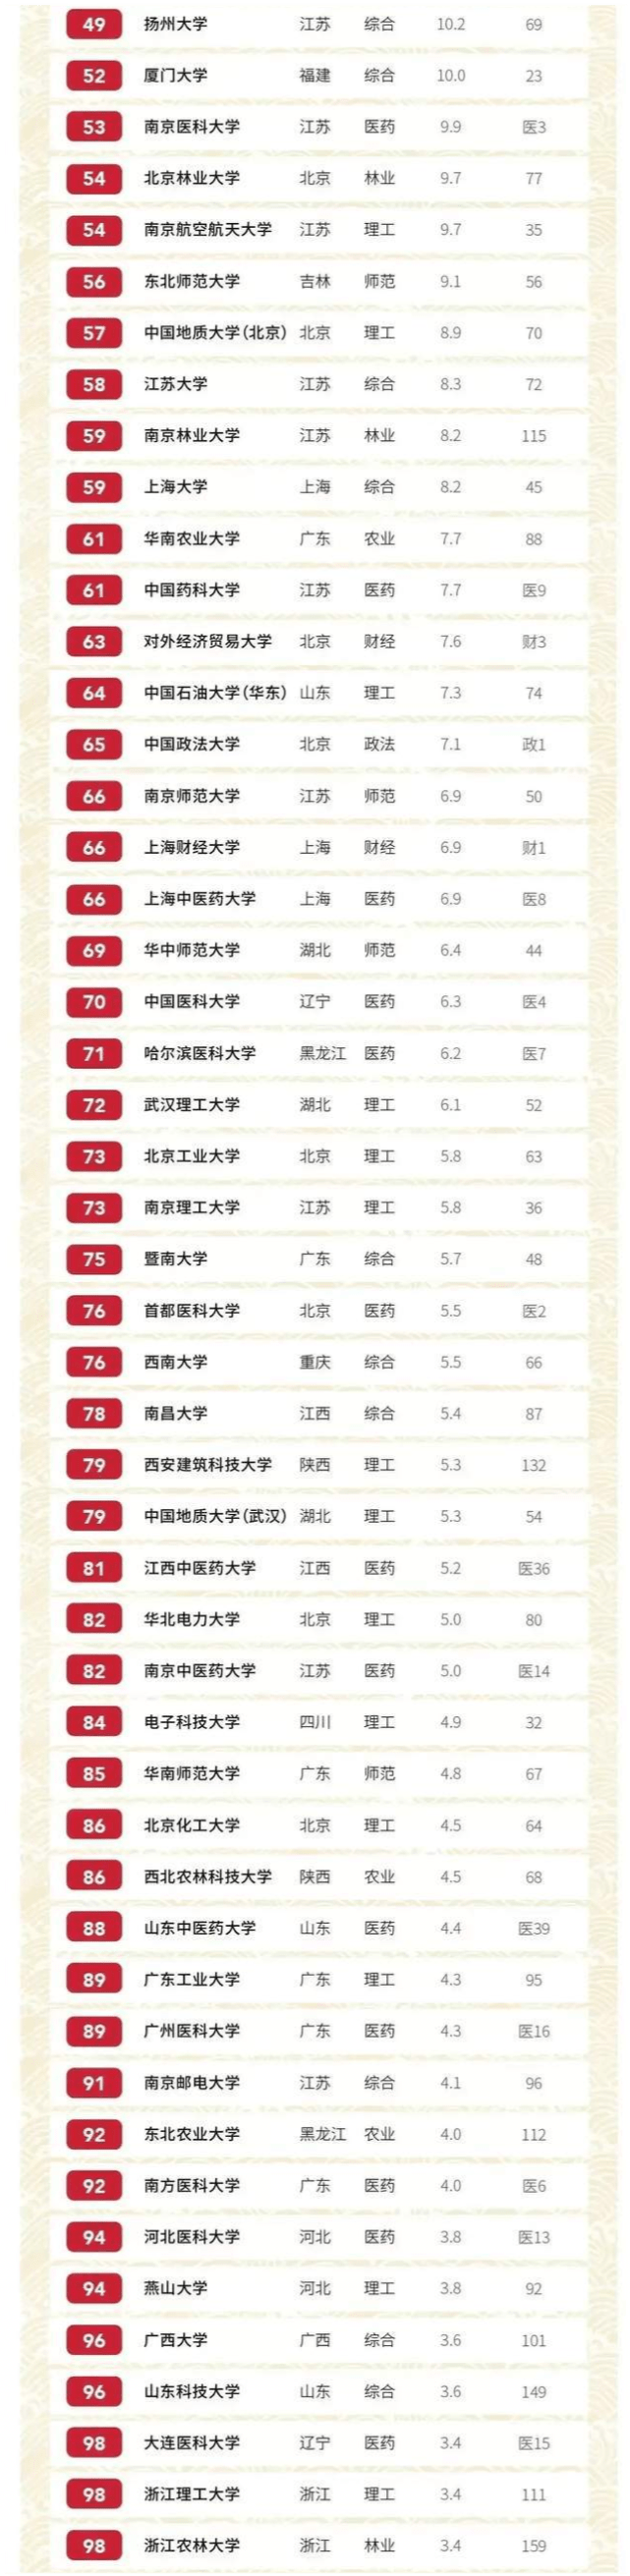 中国2020年大学排名_2020年我国综合类大学排名,北大领先,南开屈居第7